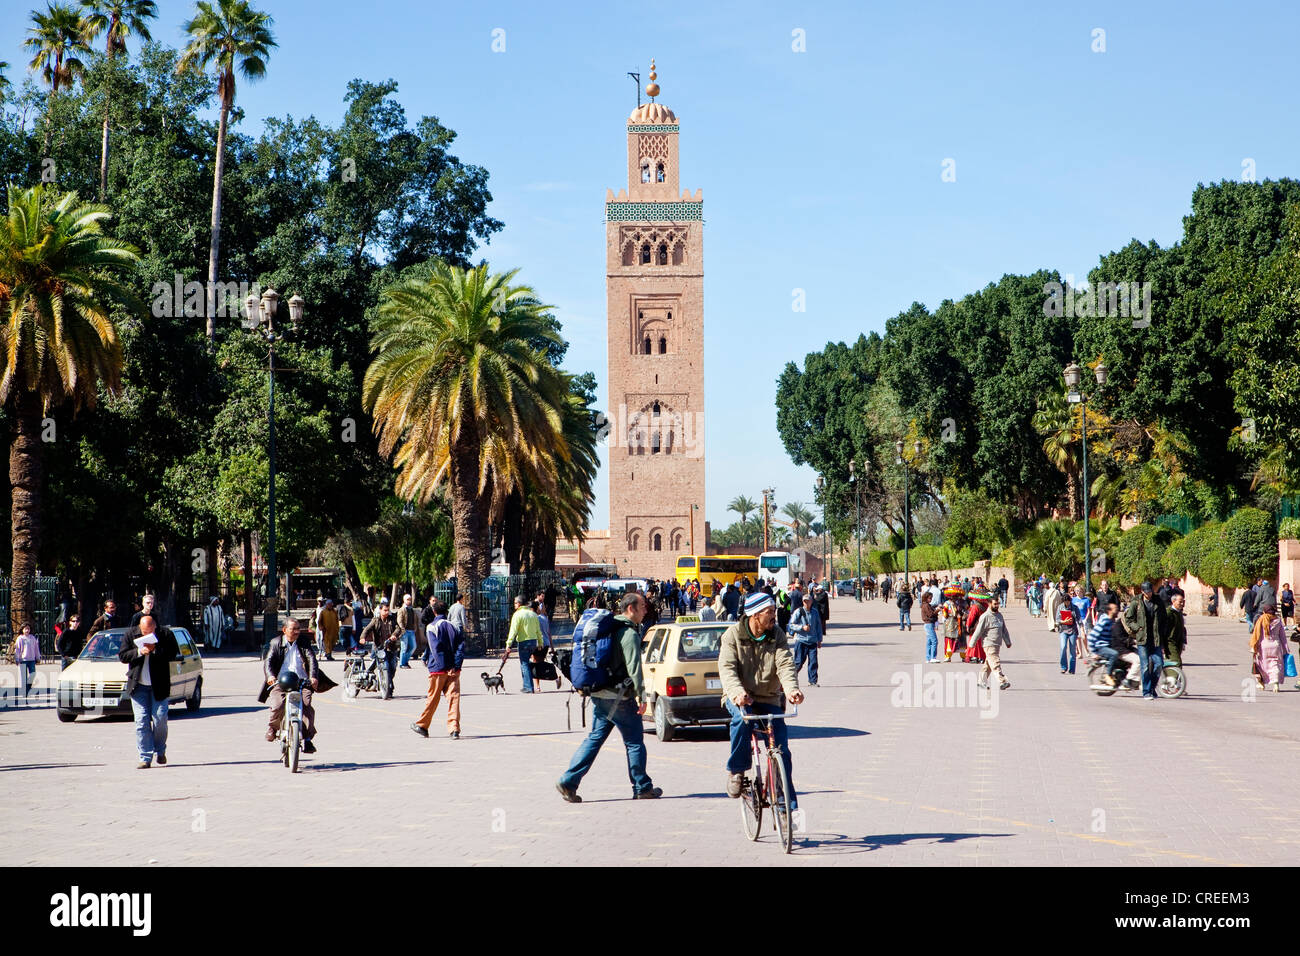 Minareto della Moschea di Koutoubia, in centro storico, patrimonio mondiale dell UNESCO, Marrakech, Marocco, Africa Foto Stock